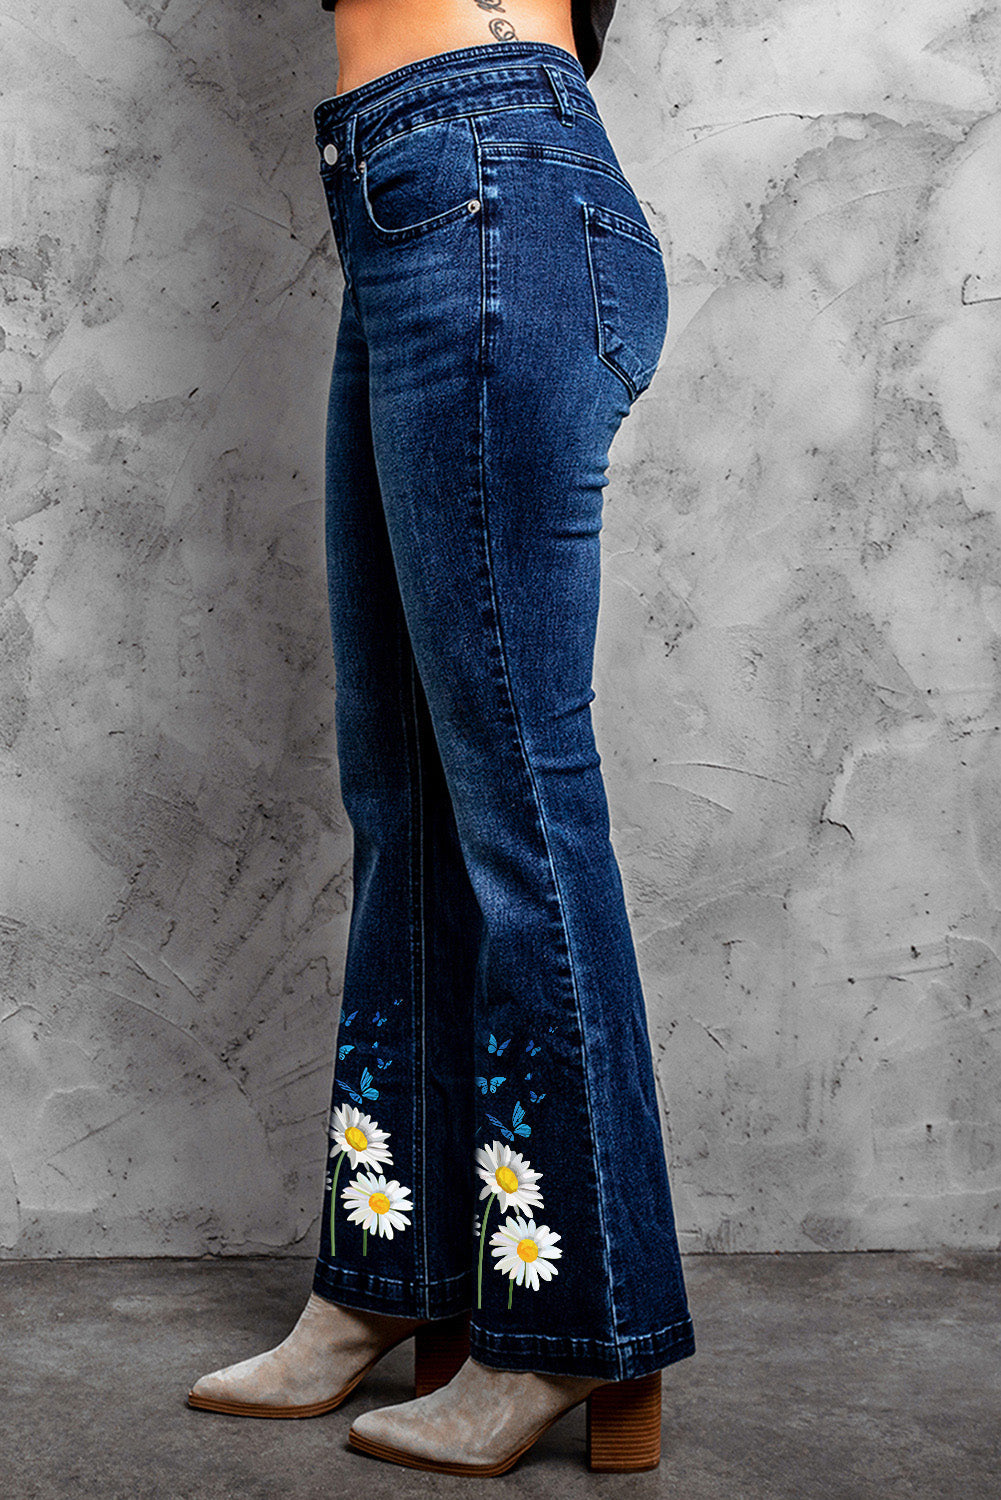 High Rise Flared Jeans High Rise Flared Jeans - M&R CORNERJeans Trendsi